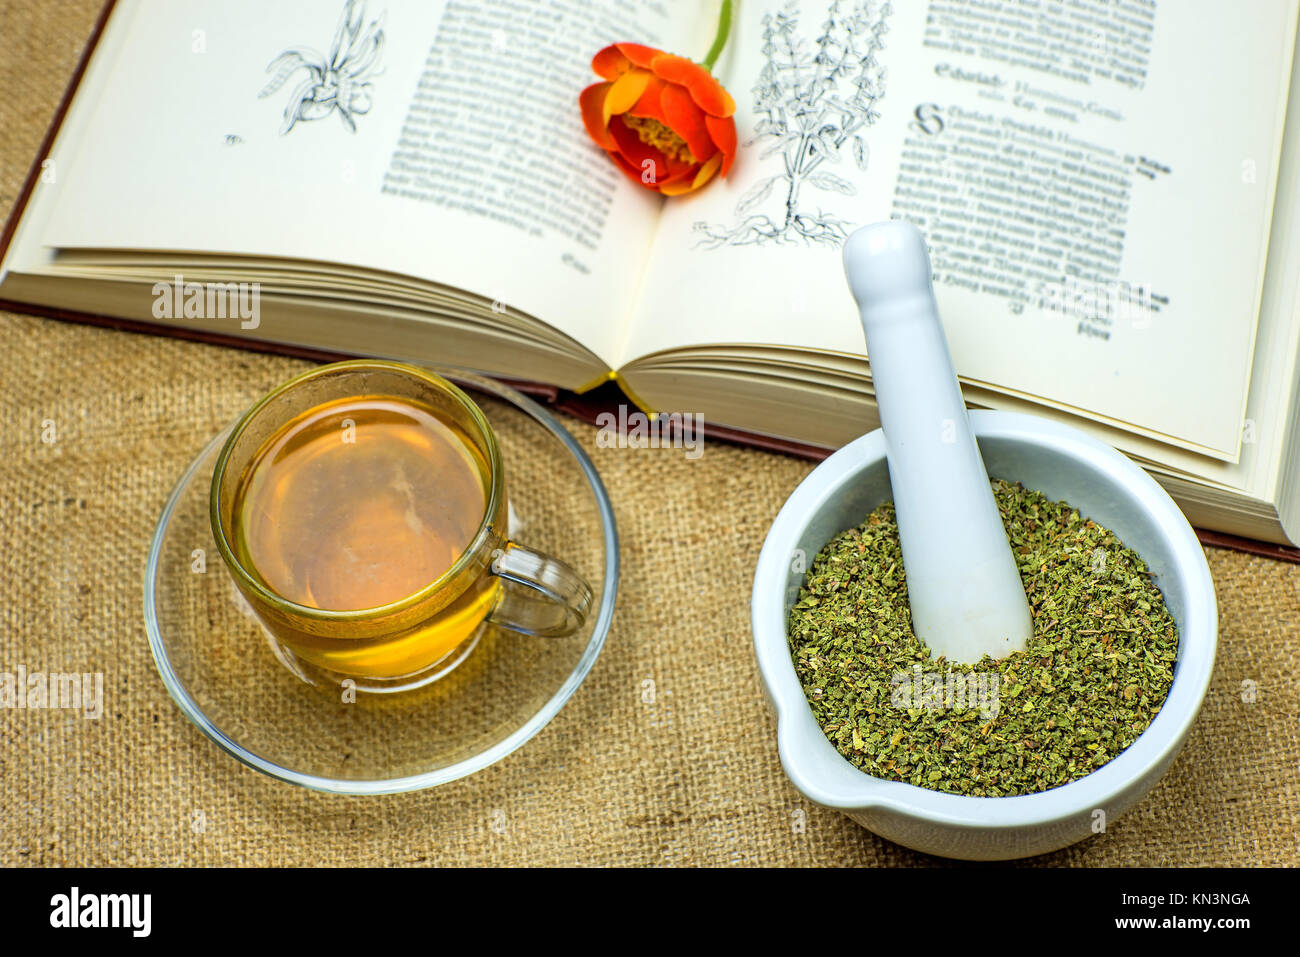 Las jaras té con textos medievales. Foto de stock